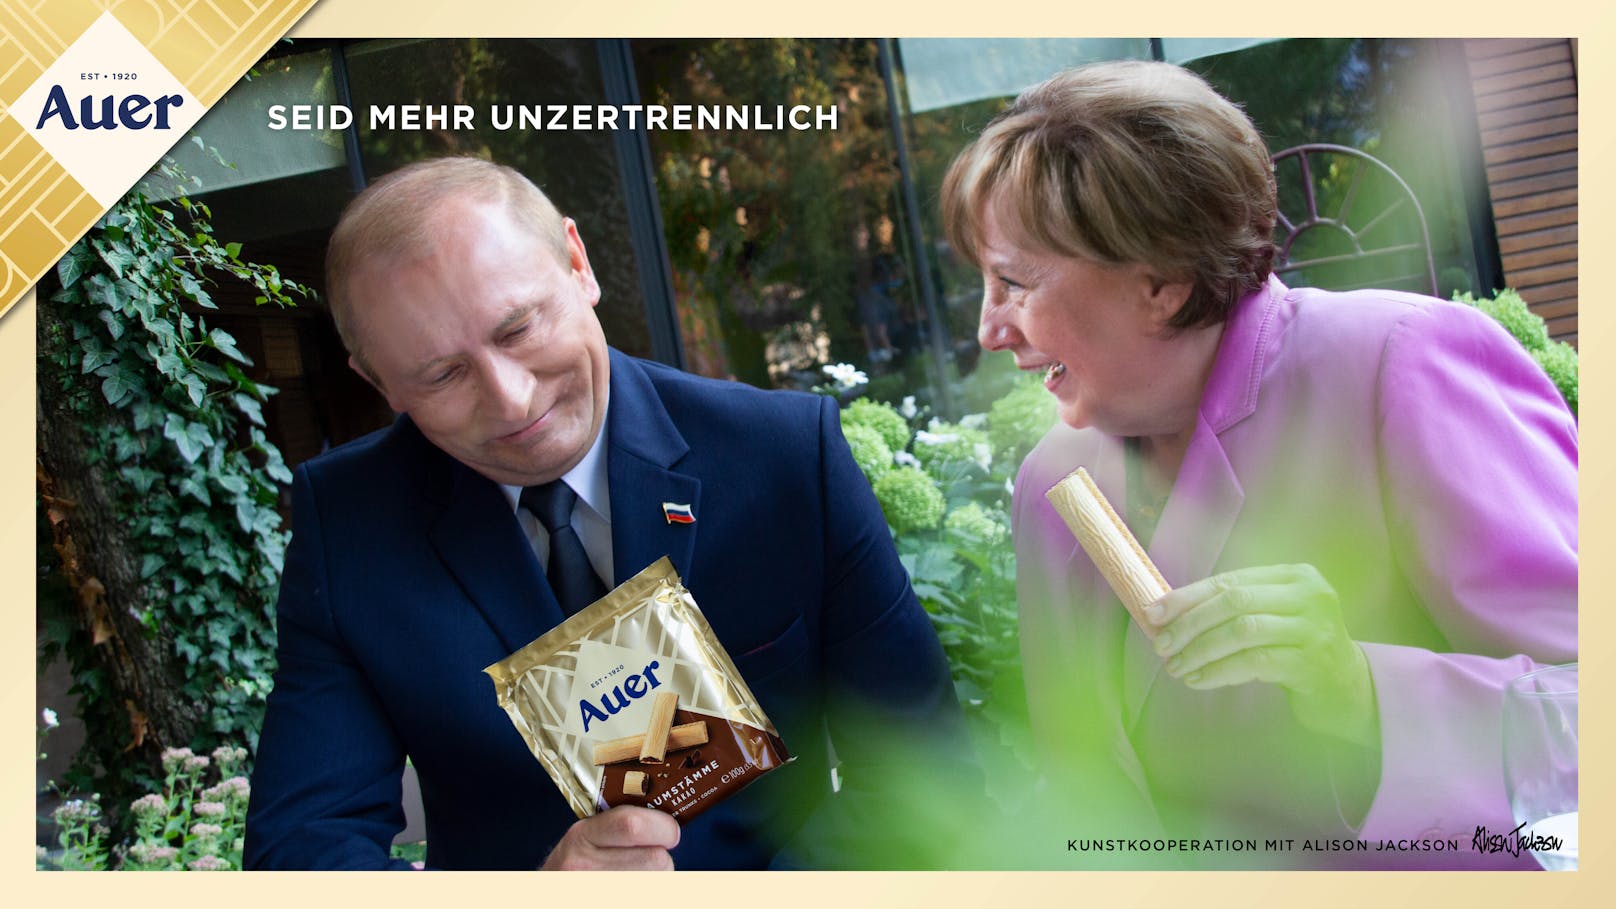 Bei den Baumstämmen von Auer sollen sogar Vladimir Putin und Angela Merkel zusammenfinden.